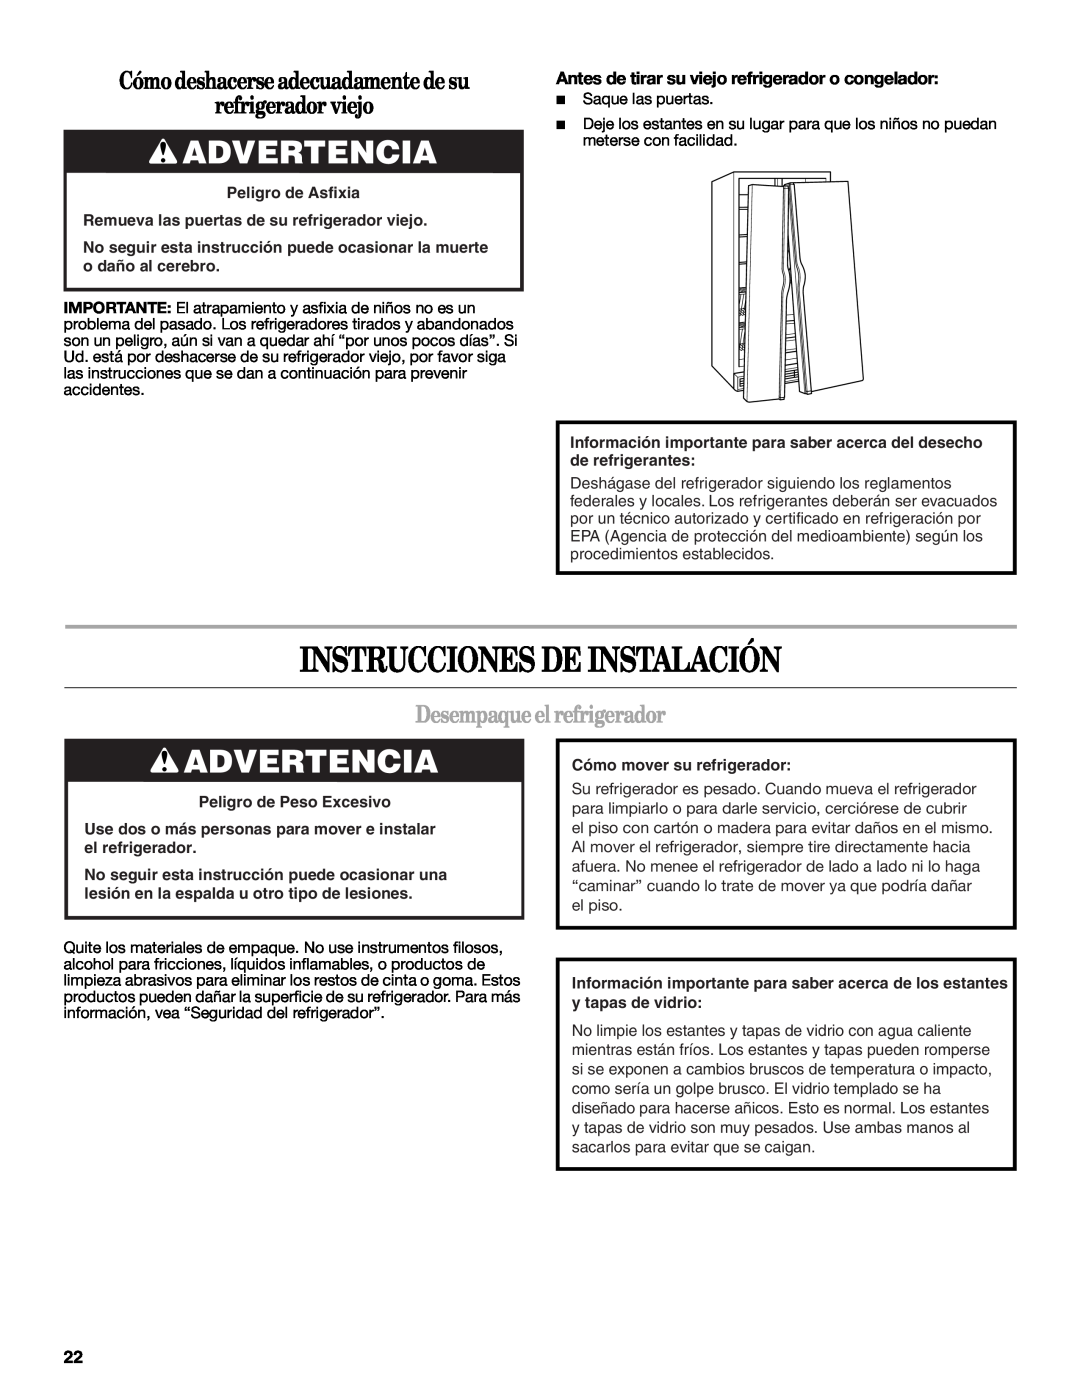 Whirlpool ED2KHAXVT Instrucciones De Instalación, Advertencia, Cómo deshacerse adecuadamente de su refrigerador viejo 